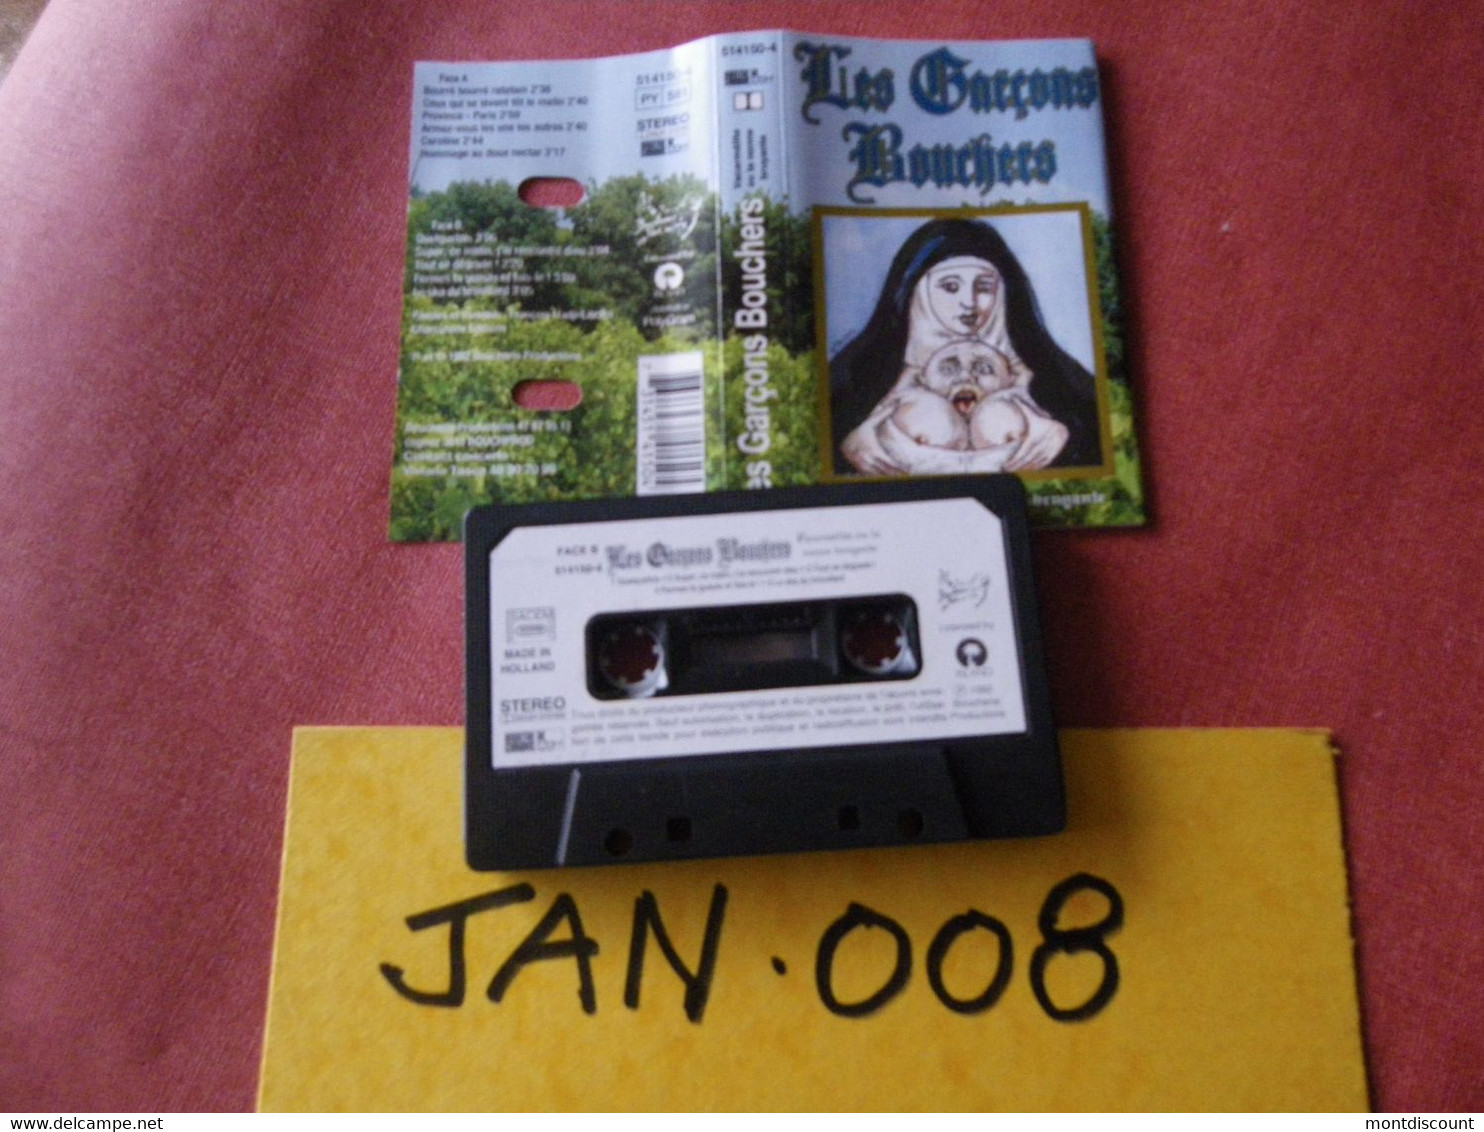 LES GARCONS BOUCHERS (Les Garçons Bouchers) K7 AUDIO VOIR PHOTO...ET REGARDEZ LES AUTRES (PLUSIEURS) (JAN 008) - Cassettes Audio